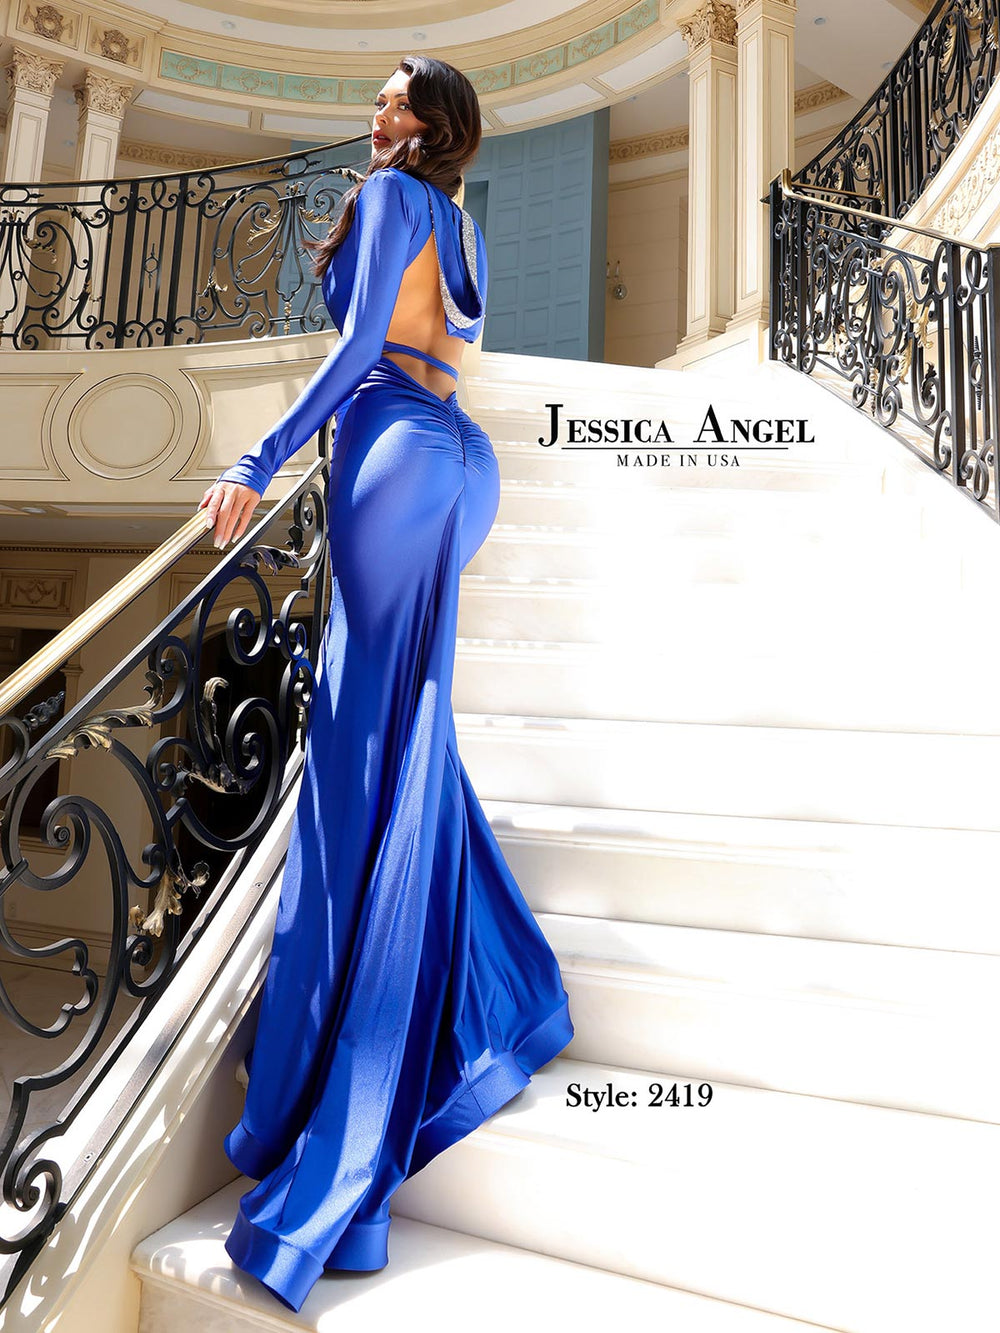 JESSICA ANGEL JA2419 DRESS - FOSTANI